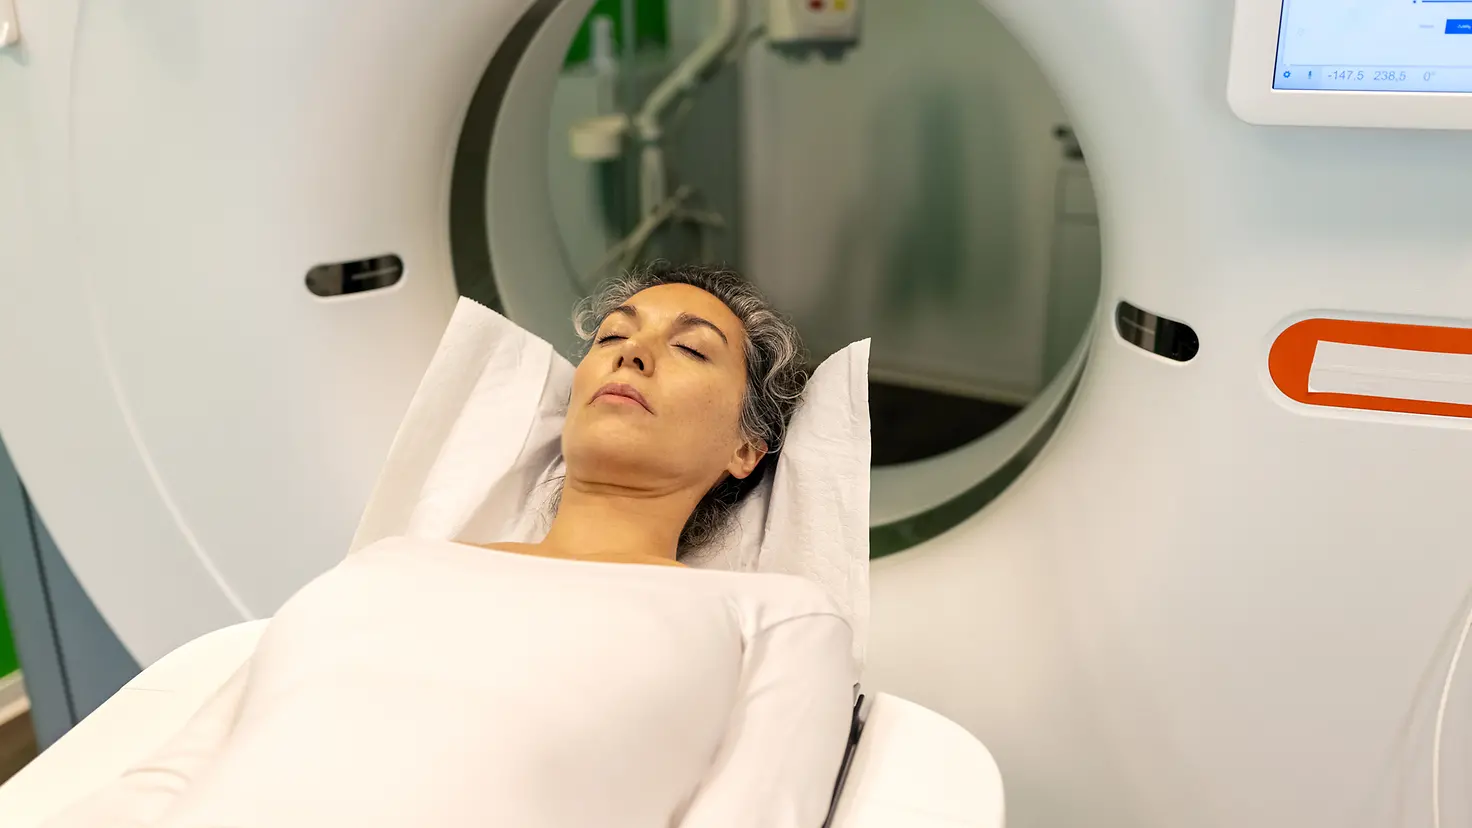 Eine Frau auf einer Therapieliege, hinter ihr befindet sich ein Tomotherapiegerät für die Strahlenbehandlung bei Leukämie.